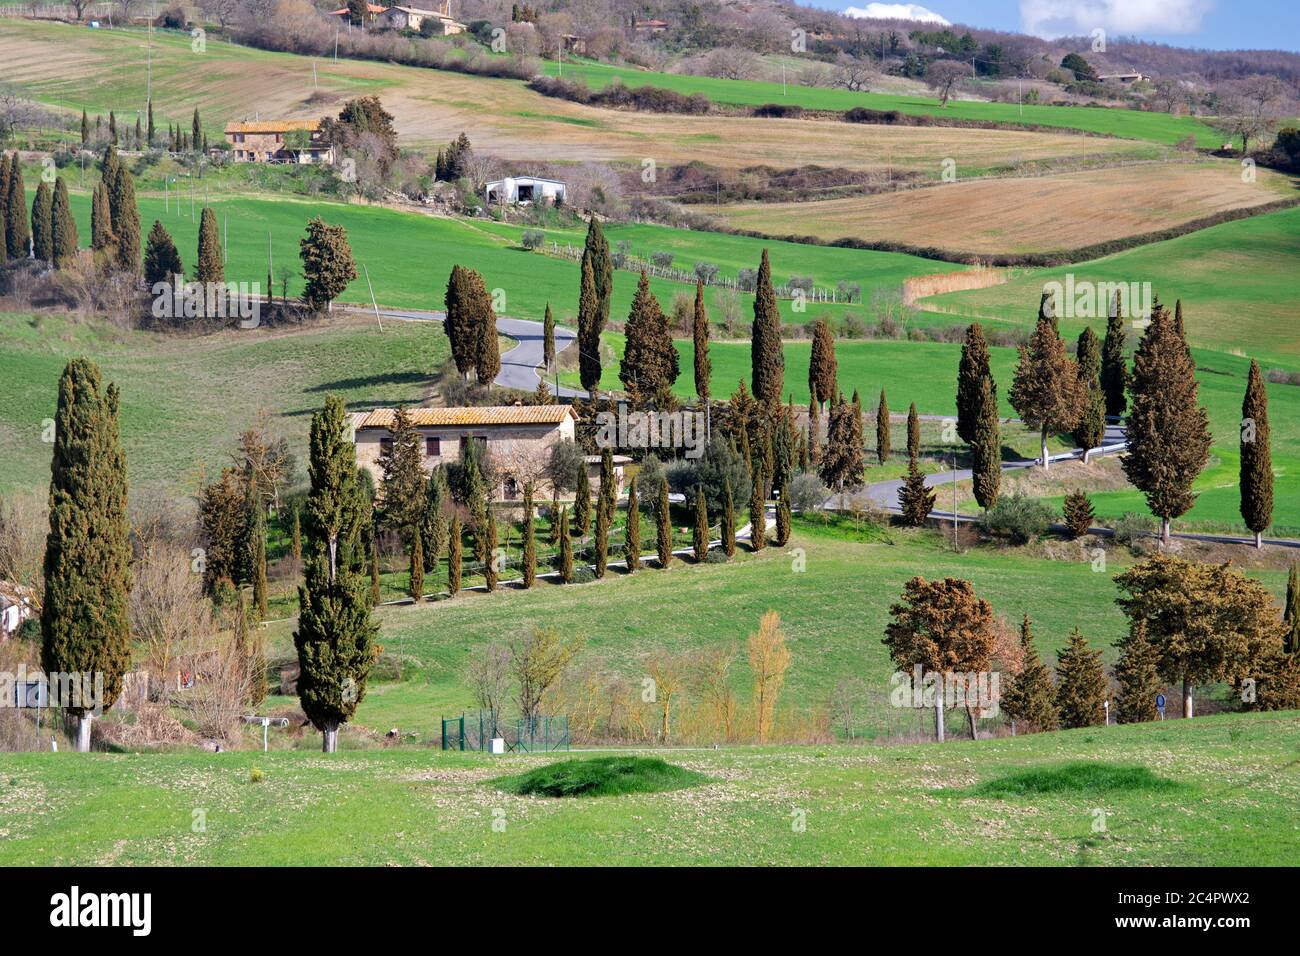 Kleine Straßen mit mediterranen Zypressen, Bauernhäusern und grünen Hügeln, eine typische Landschaft der Toskana, Italien Stockfoto